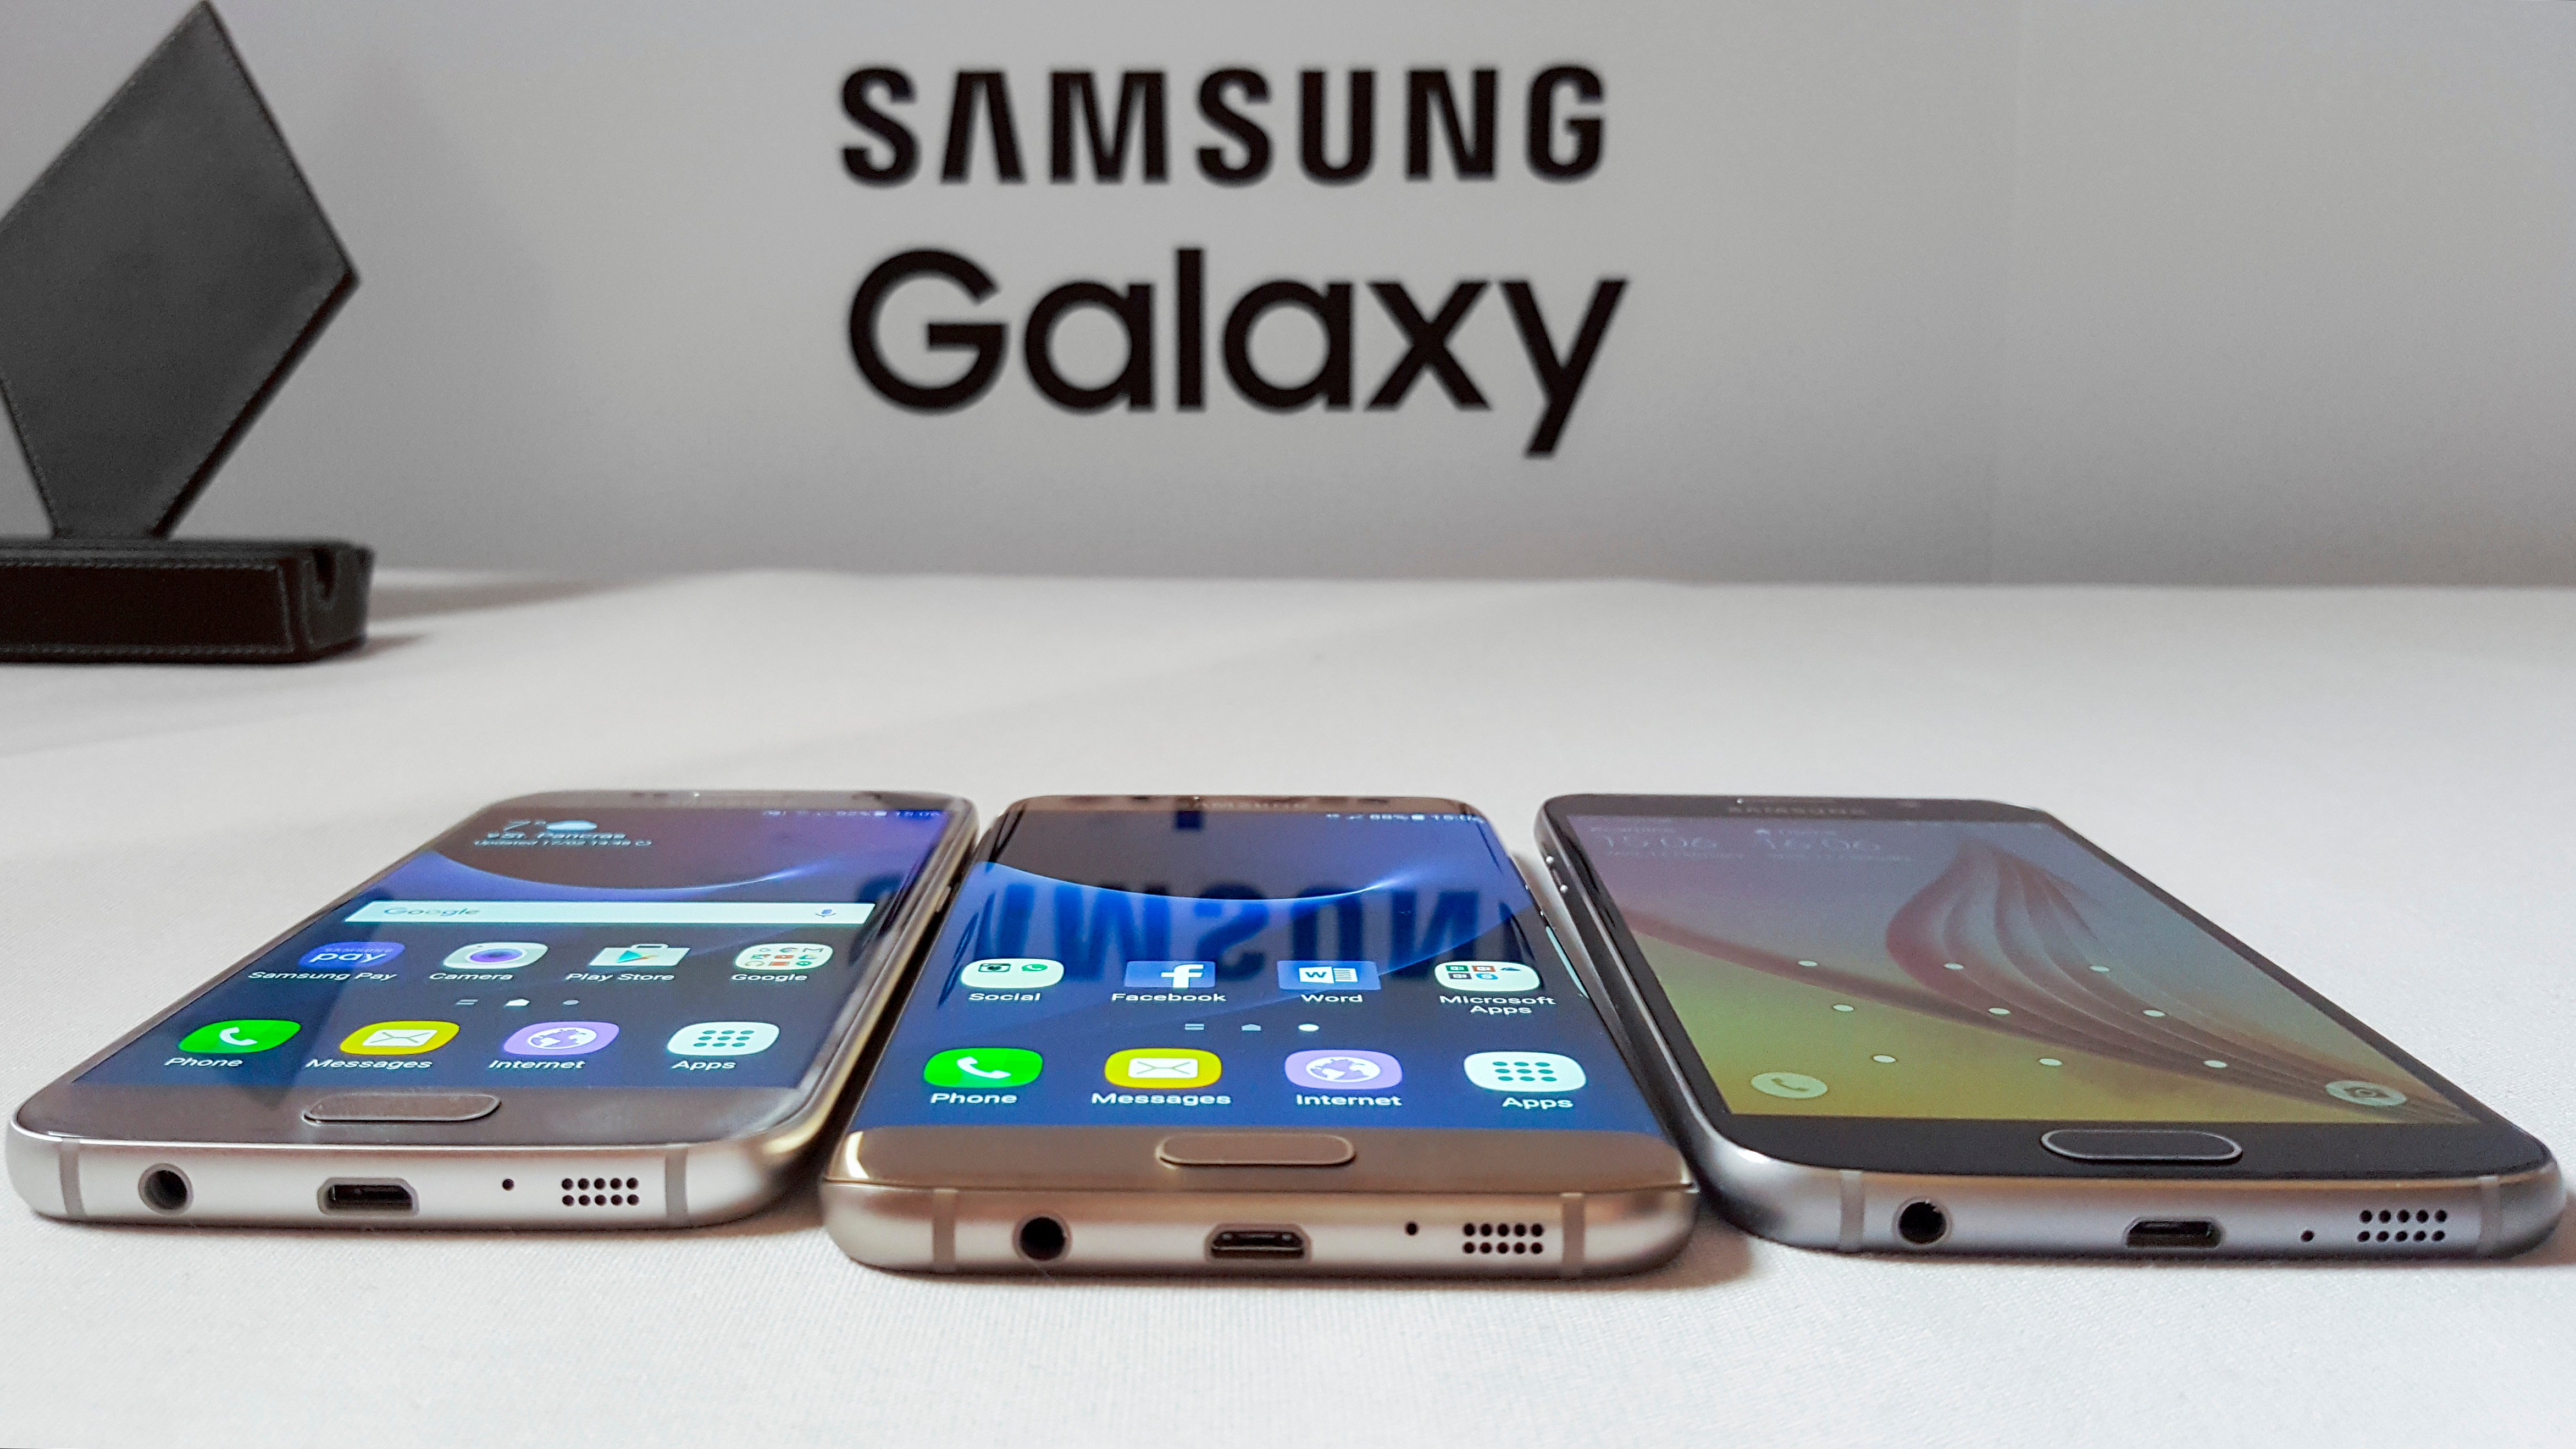 Samsung Galaxy S7 Usb